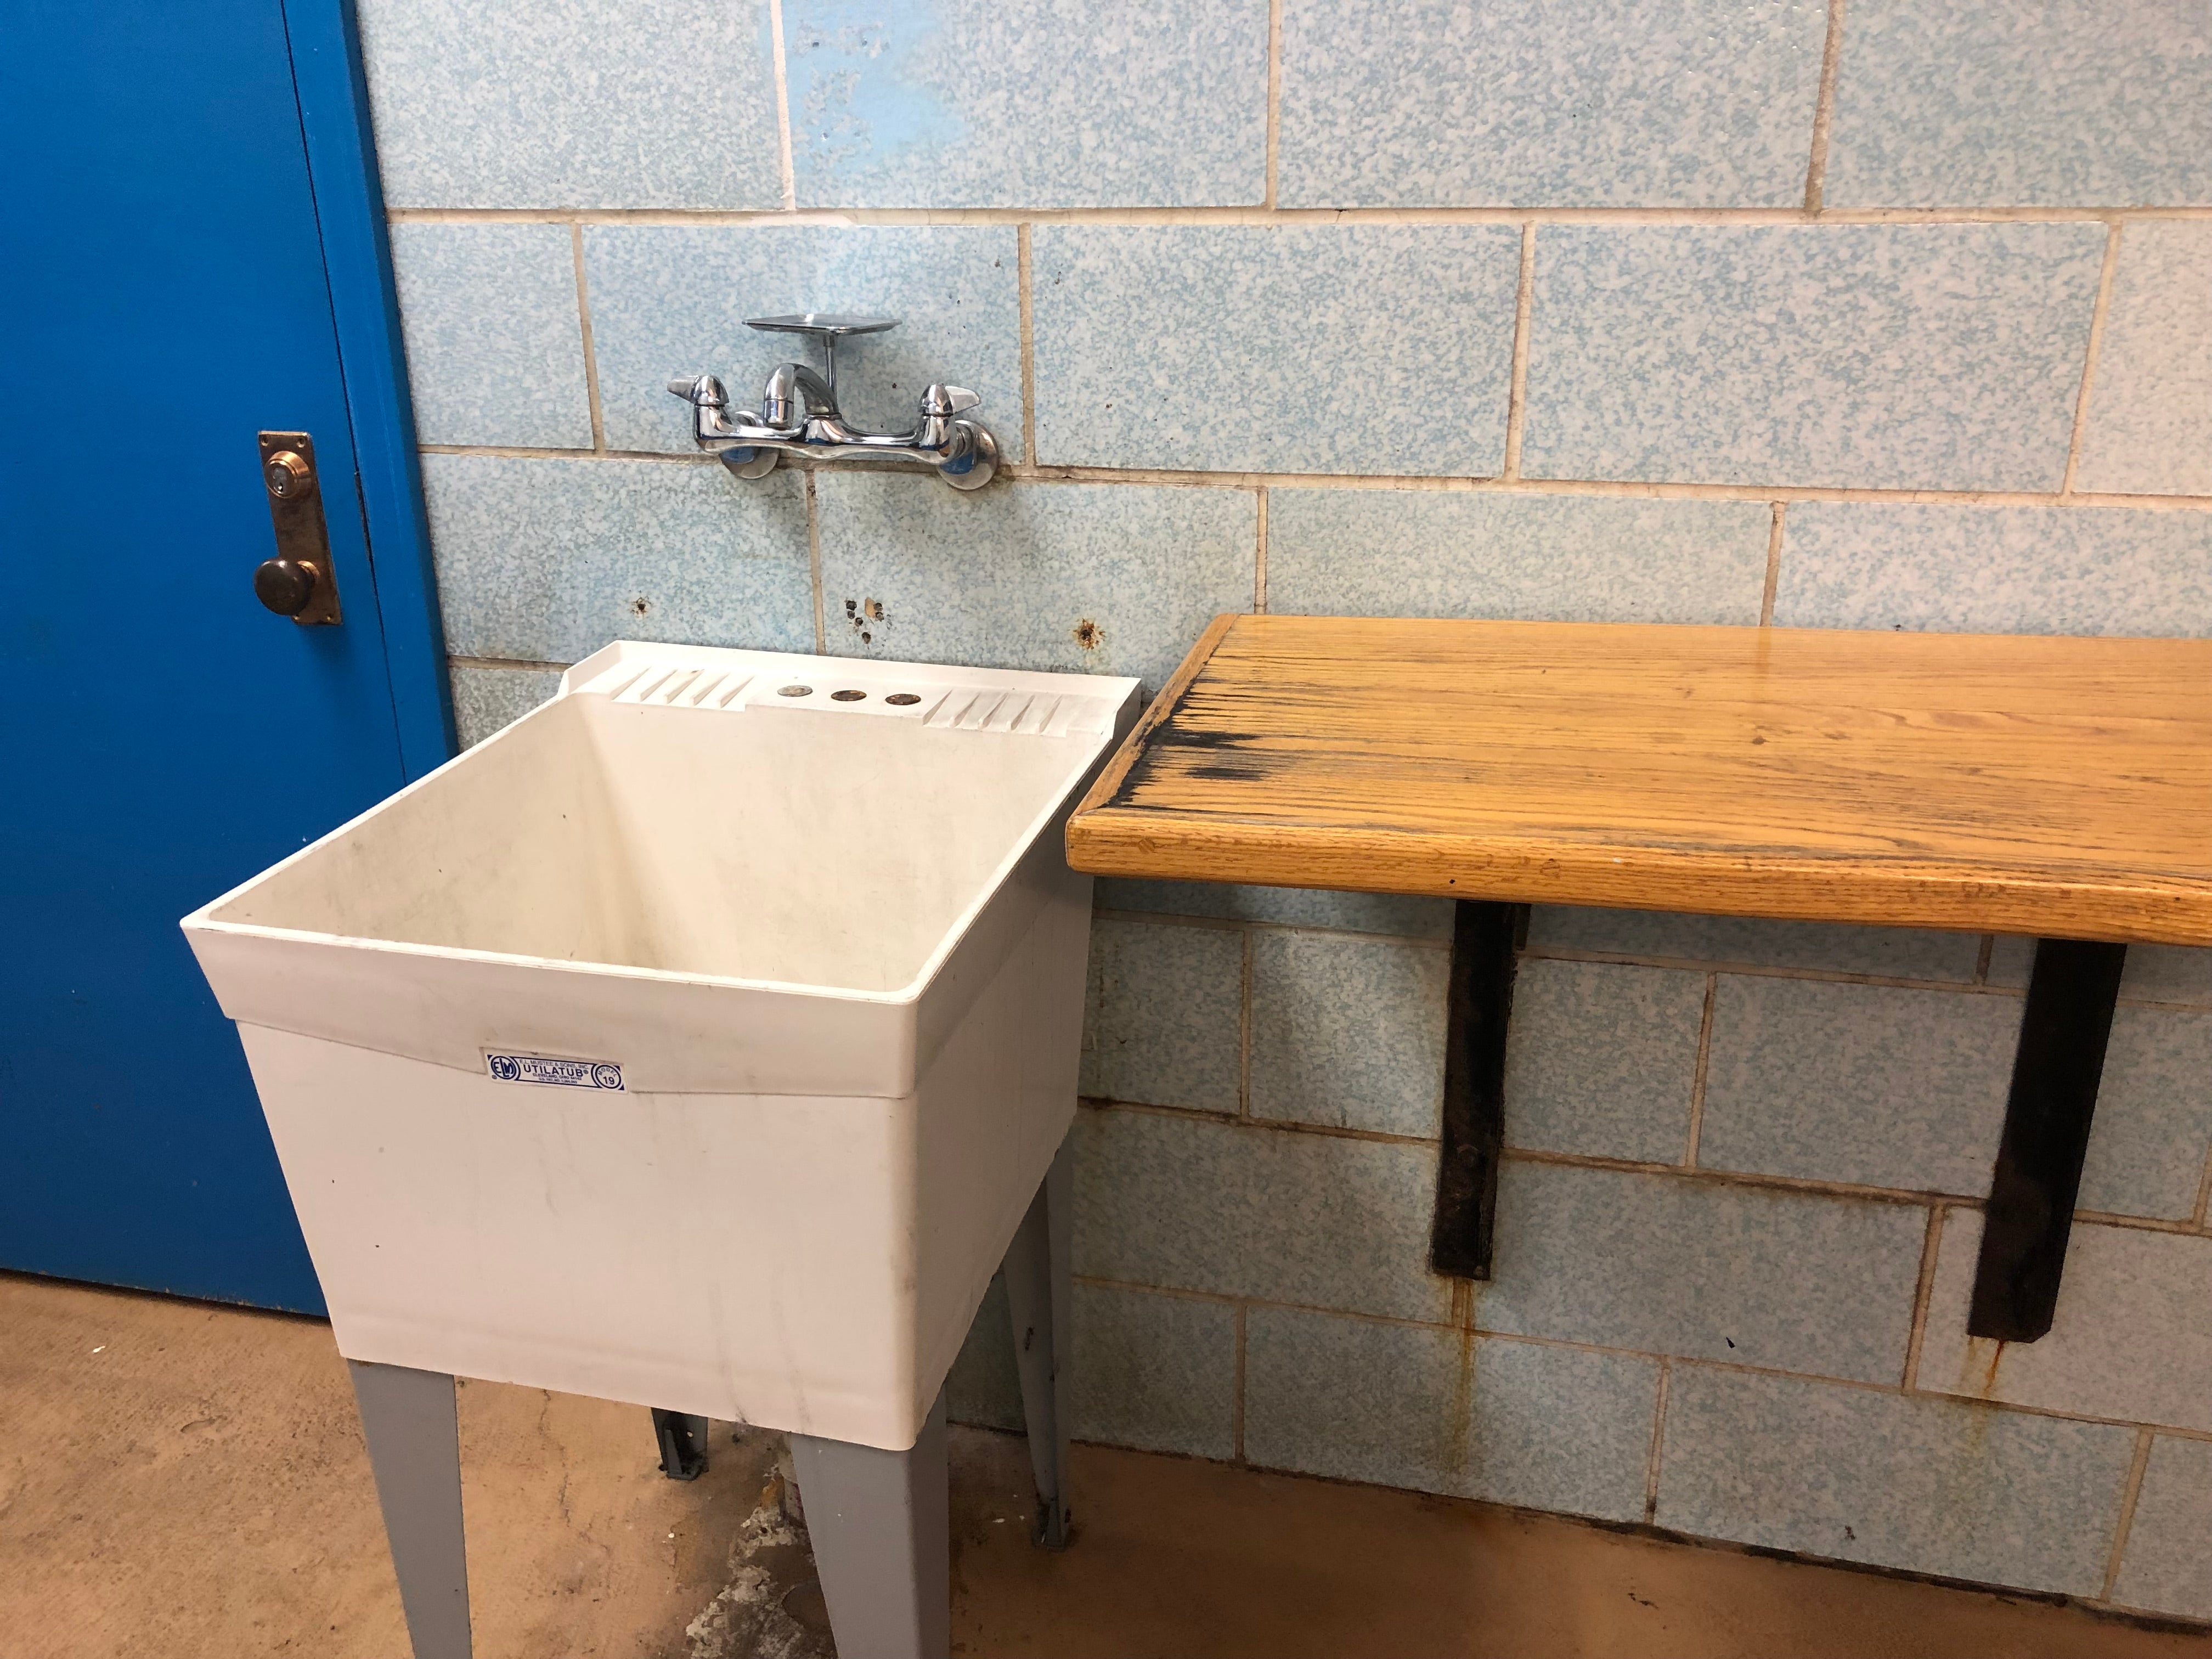 Utility sink